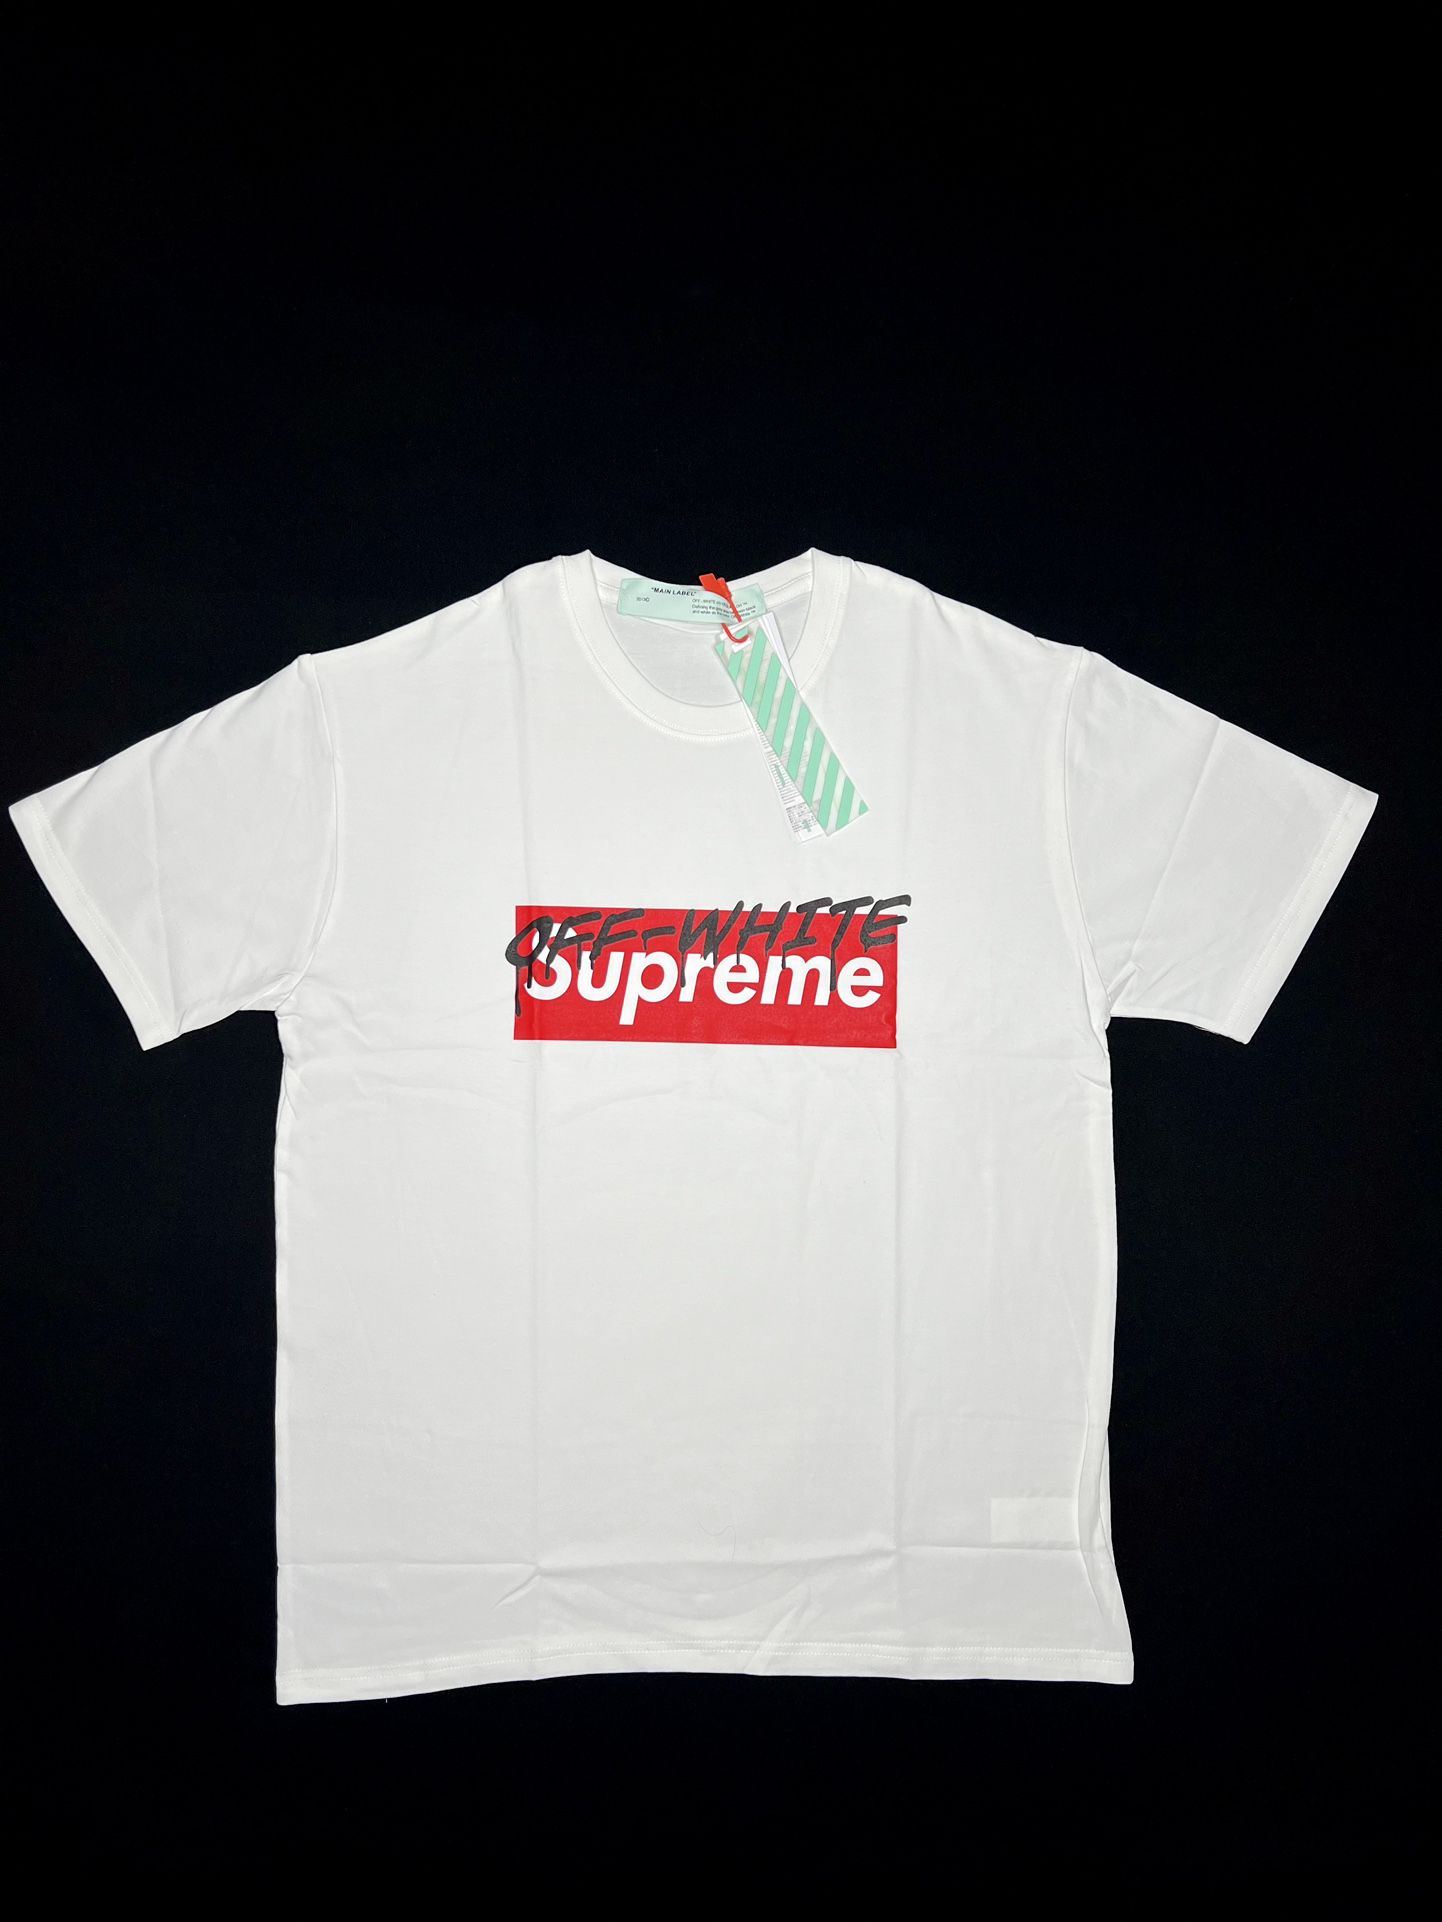 Off-white X Supreme Shirt